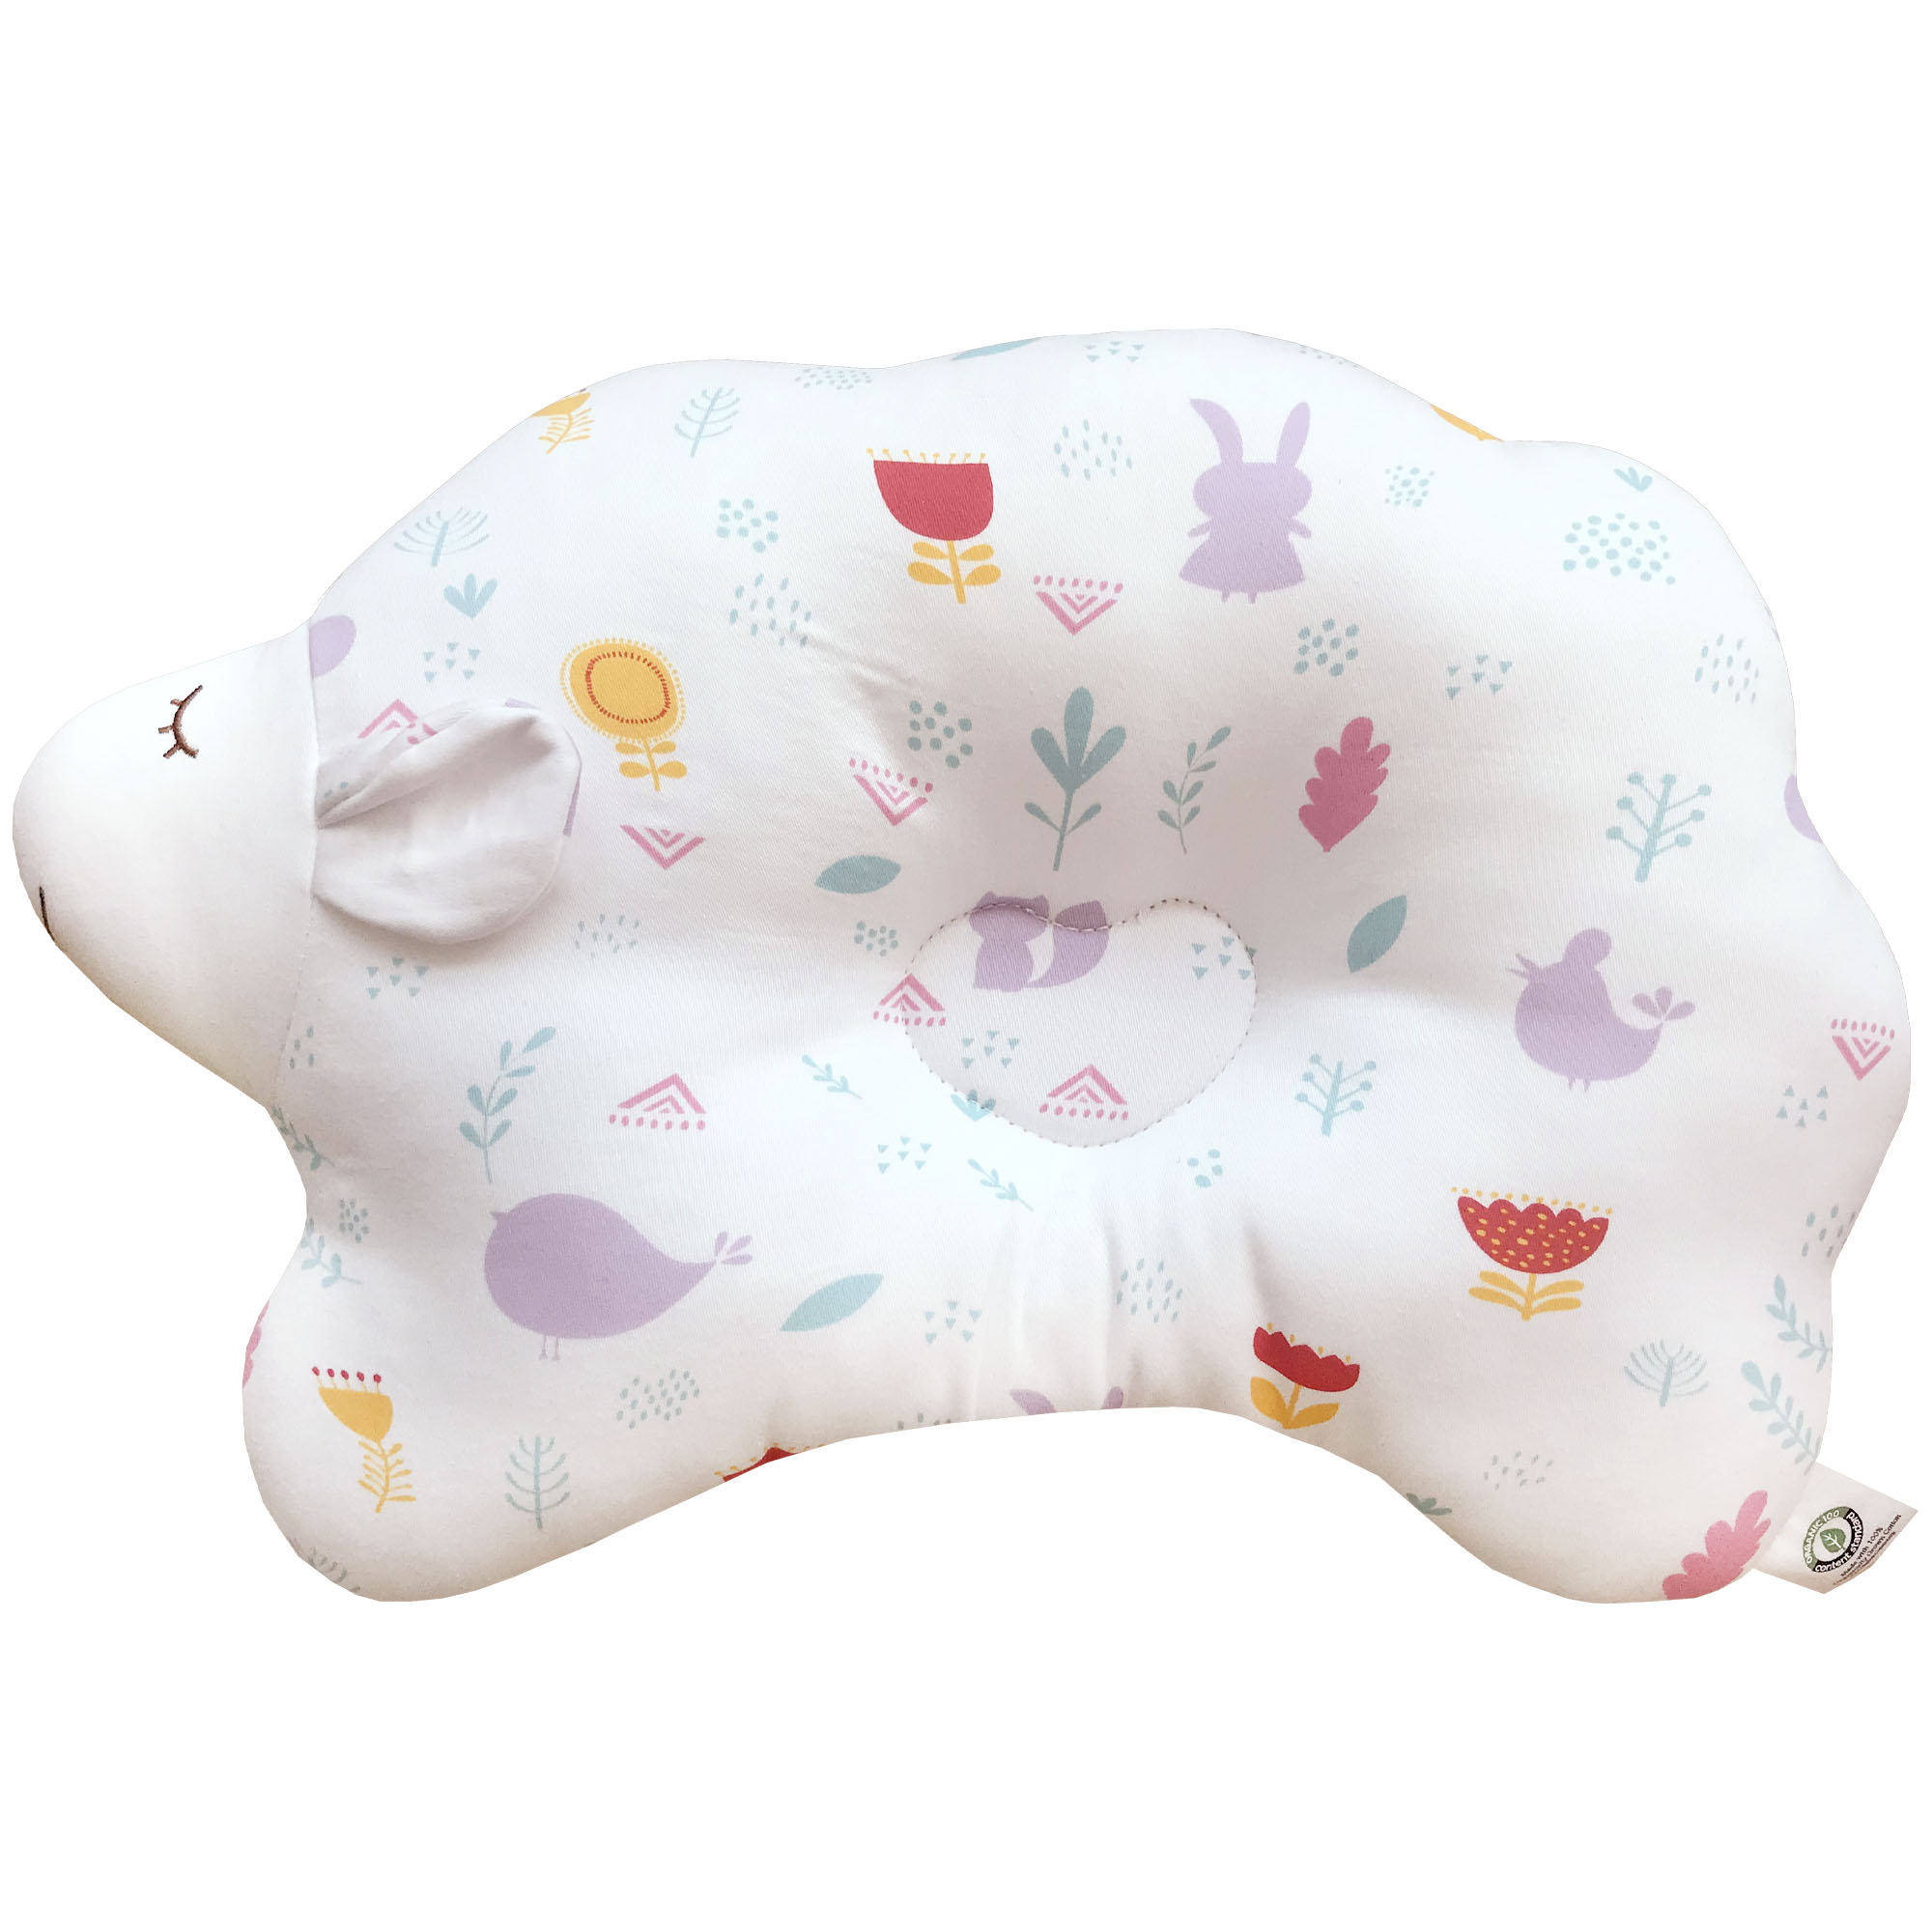 Organic Cotton Baby Protective Pillow 3D Air Mesh Cloud Lamb - Dot 